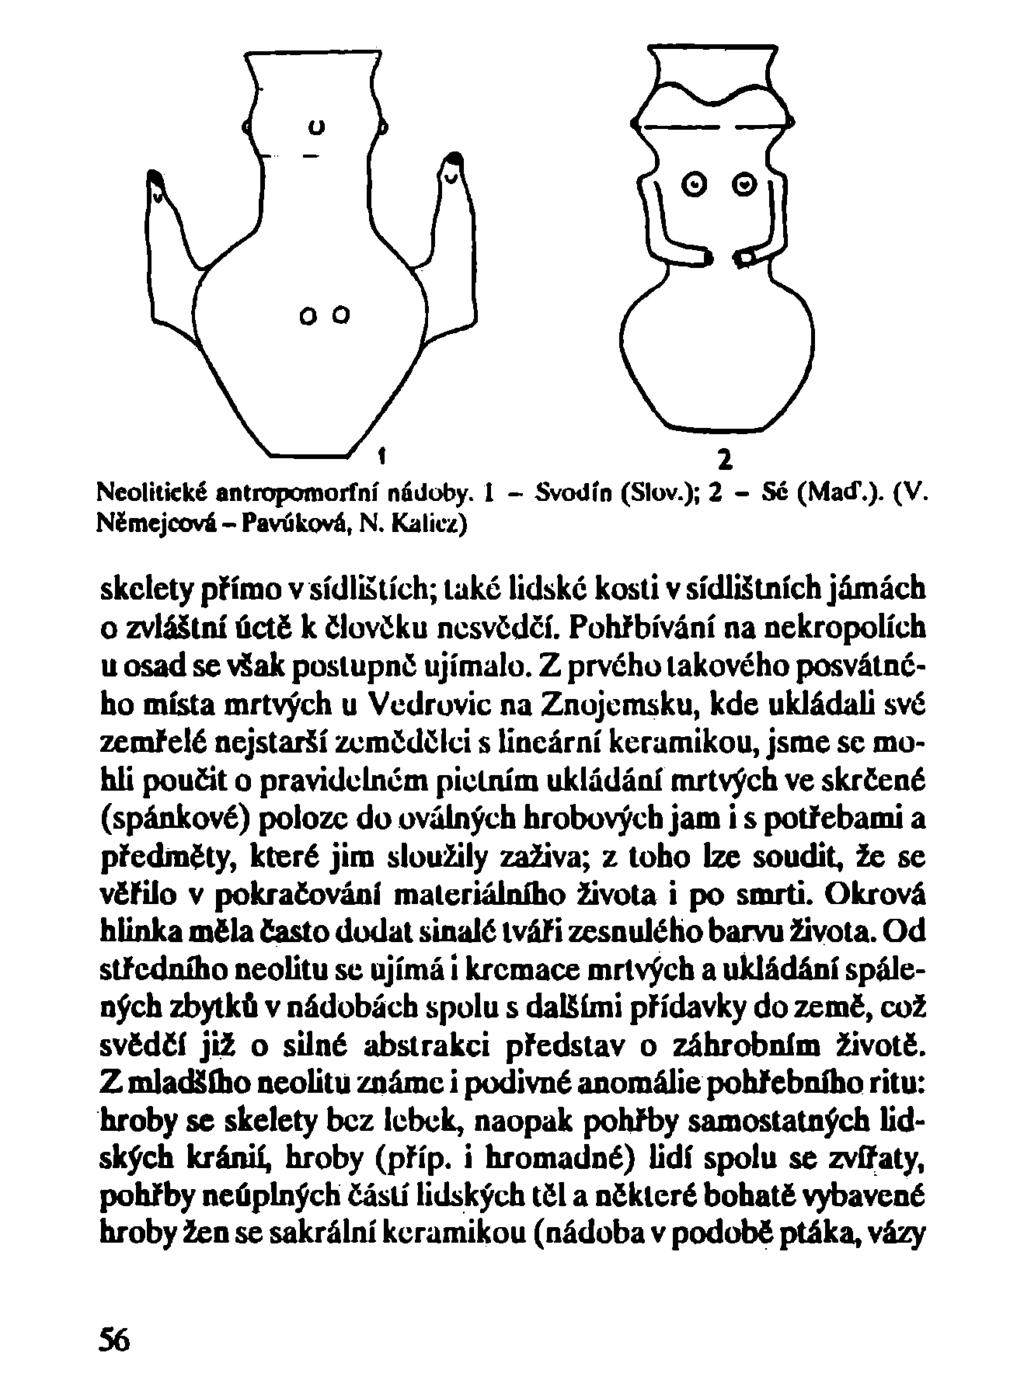 Neolitické antropomorfní nádoby. 1 - Svodín (Slov.); 2 - Sé (Maď.). (V. Němejcová - Pavúková, N.